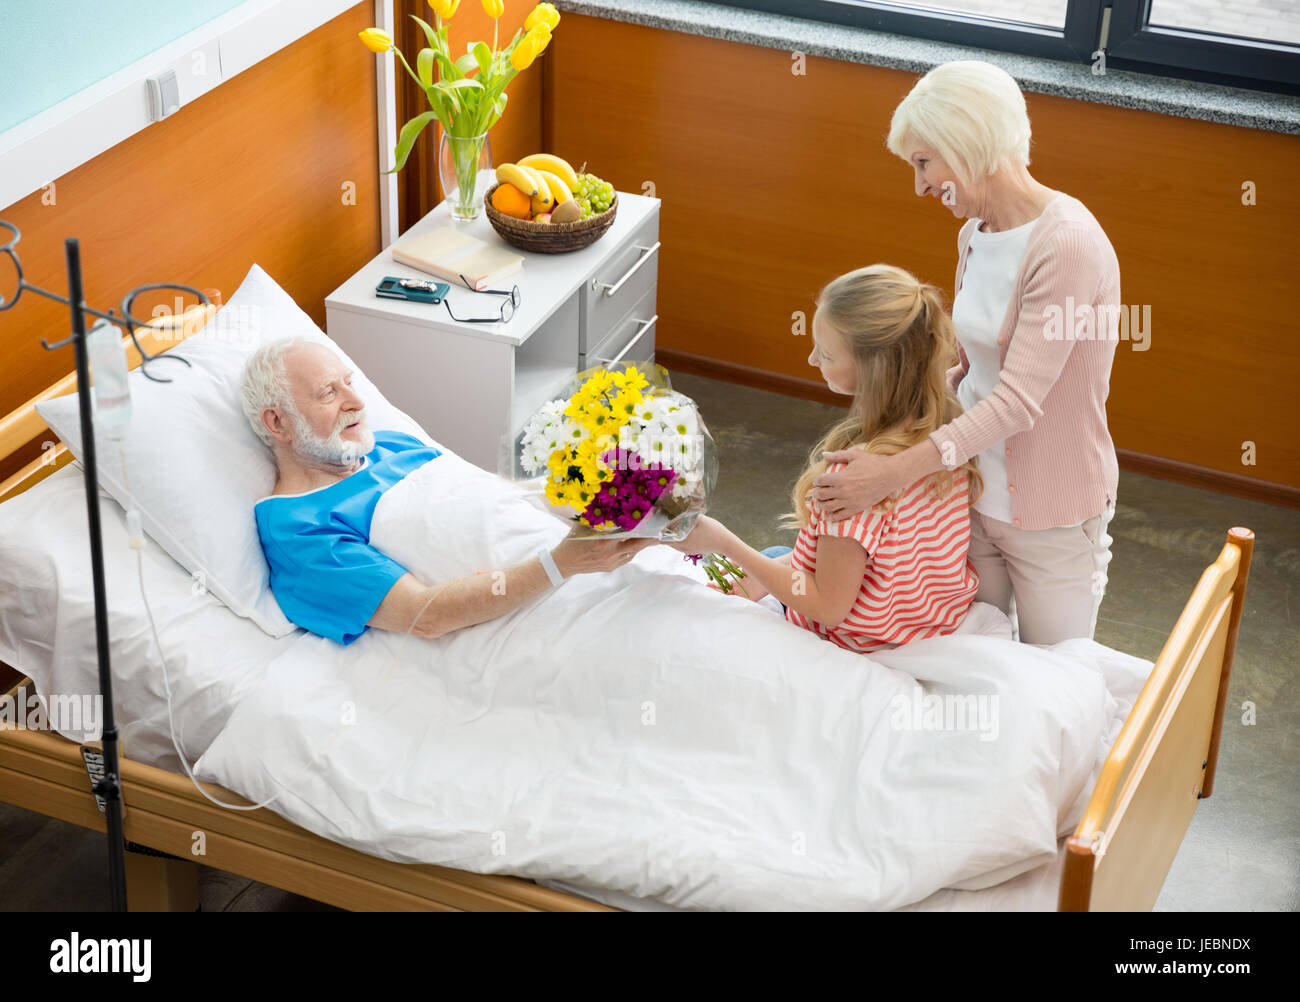 Навестить заболевшего. Навещать больного в больнице. В больнице пациента навещают. Посещение больного в больнице родственниками.